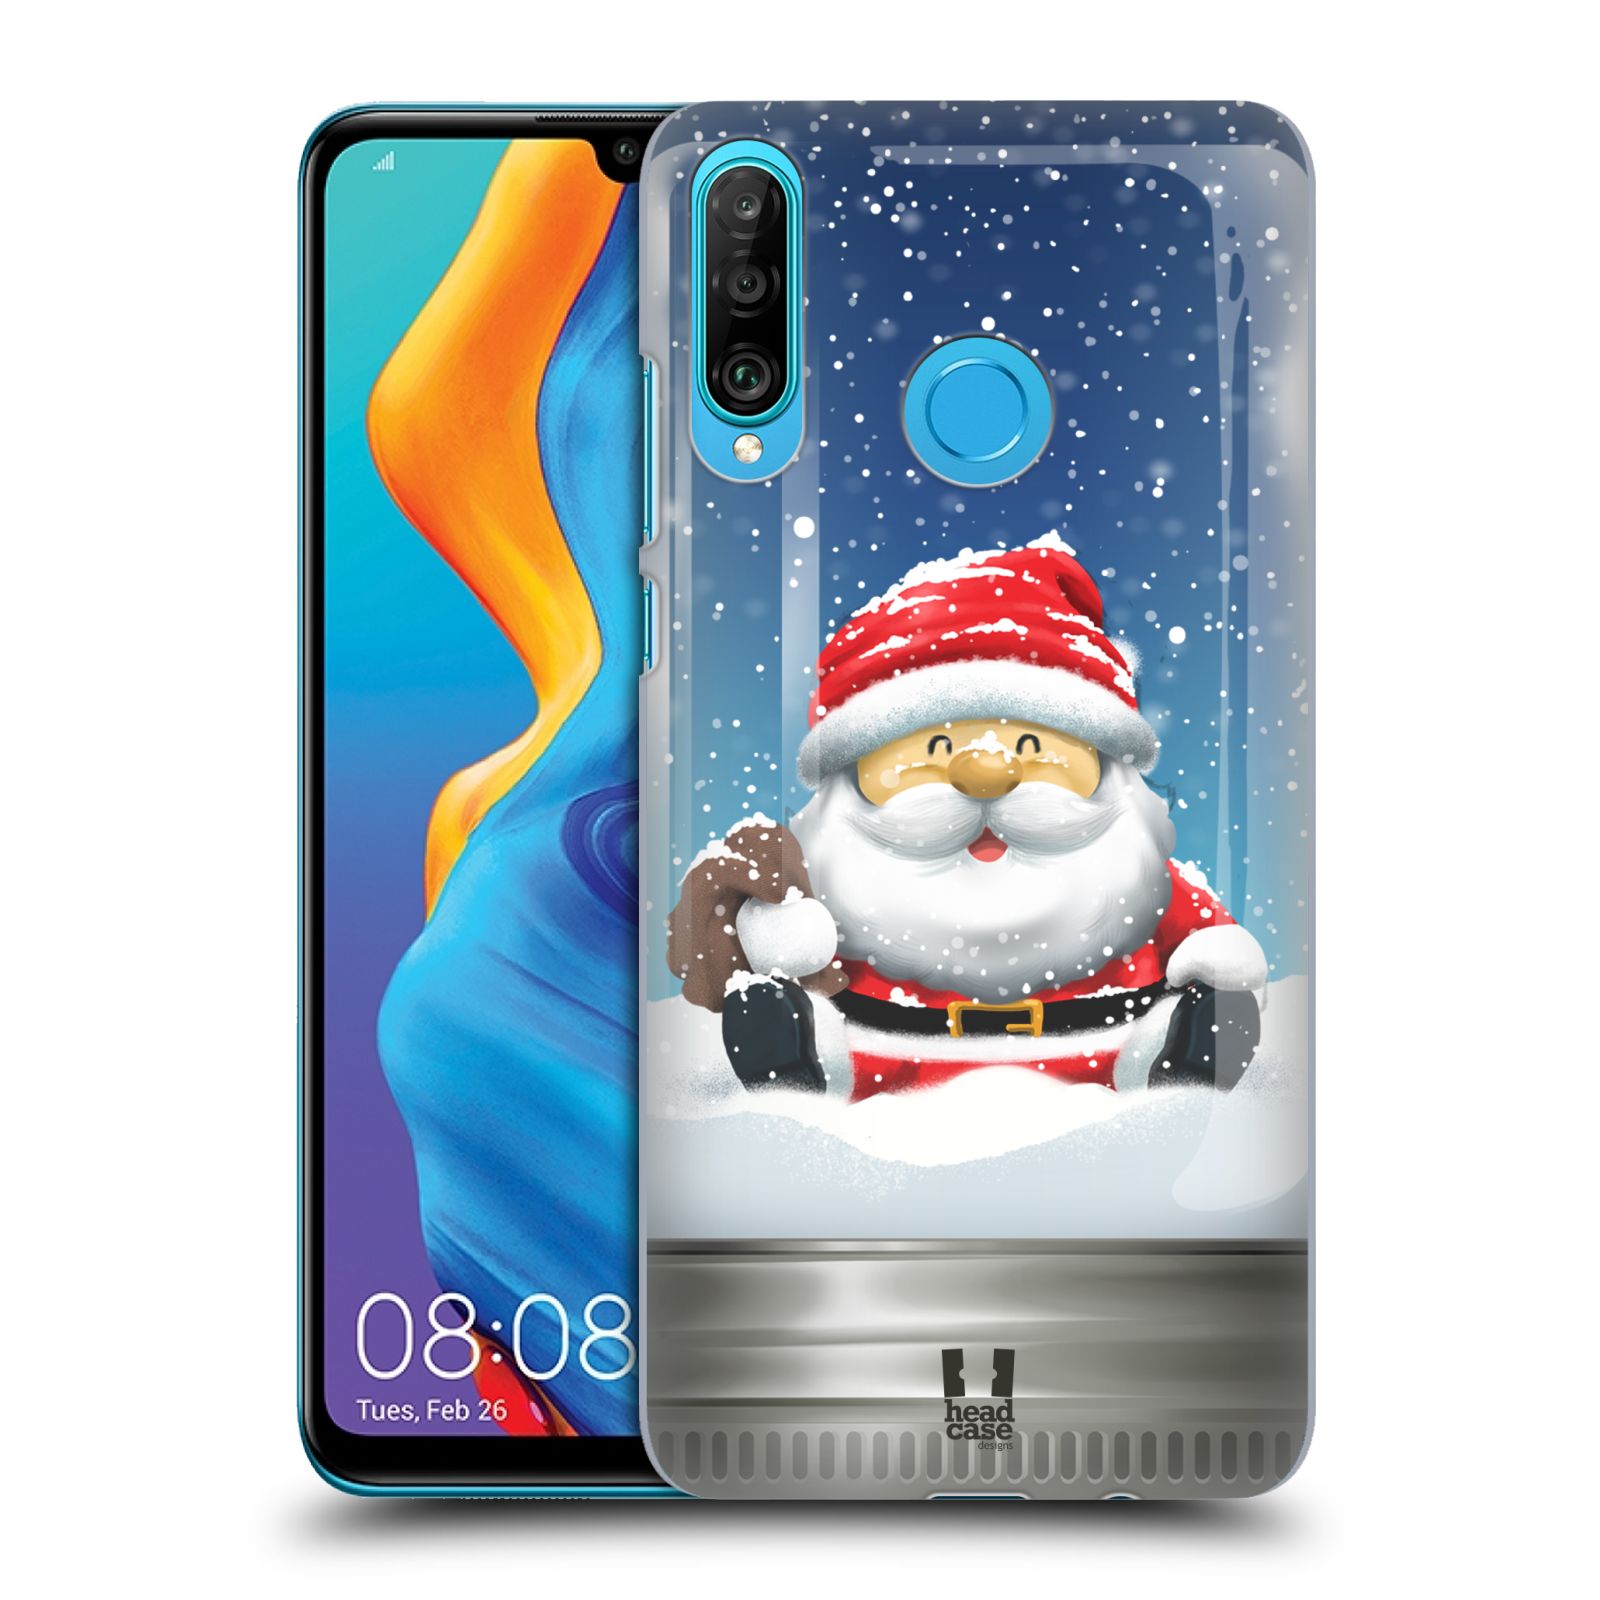 Zadní obal pro mobil Huawei P30 LITE - HEAD CASE - Vánoční motiv Santa Klaus